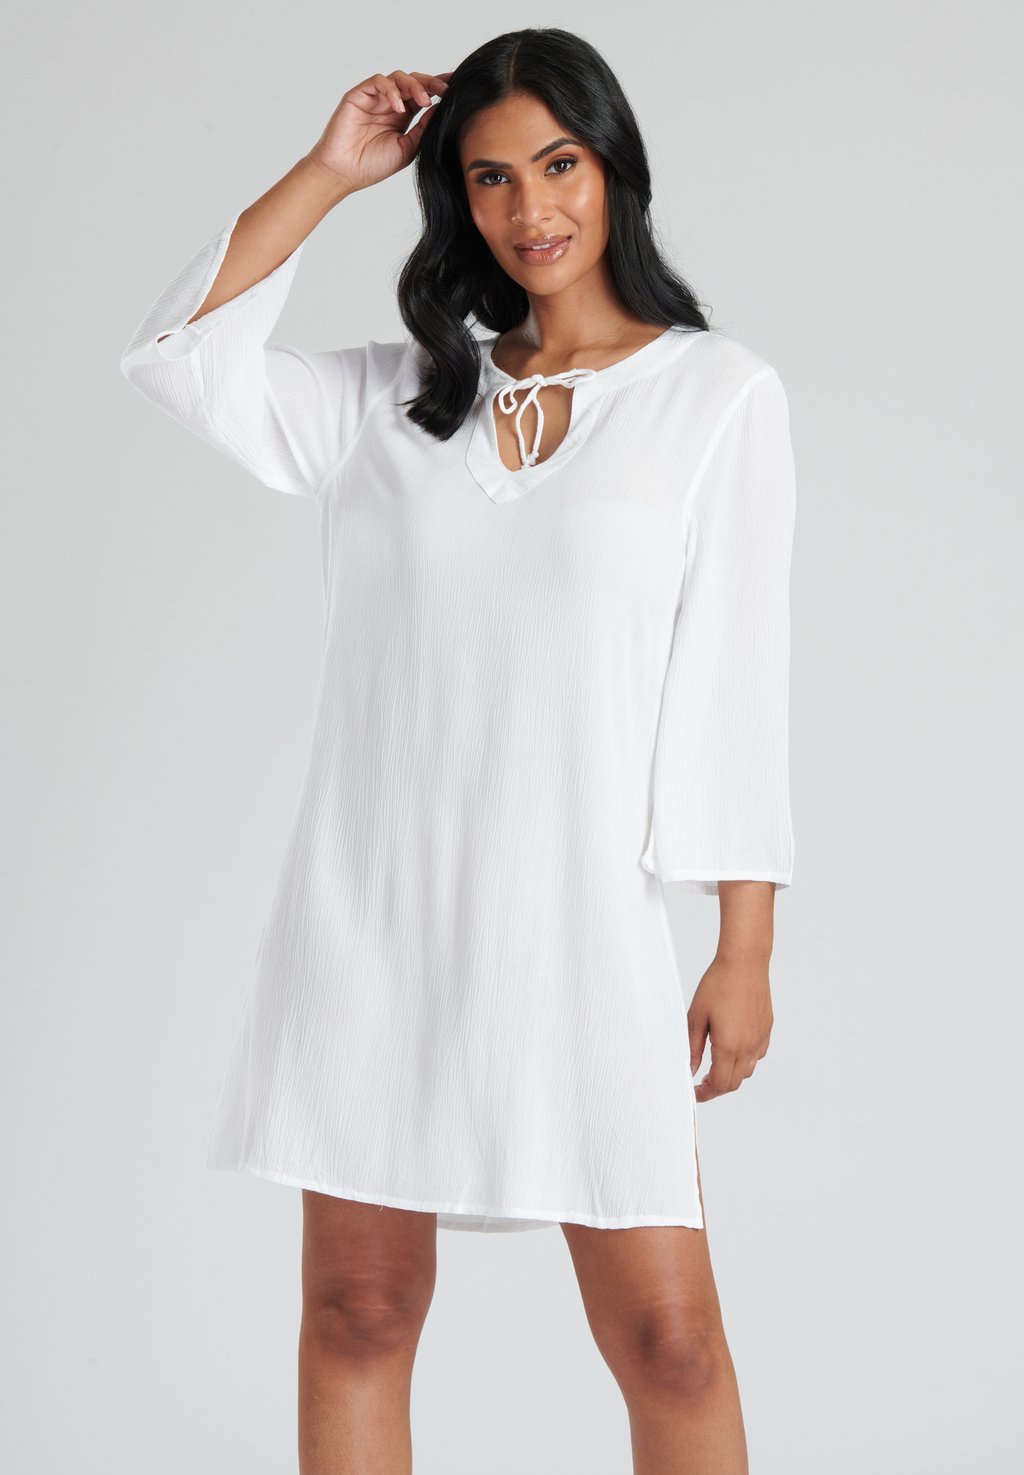 Дневное платье COVER UP DRESS South Beach, цвет white